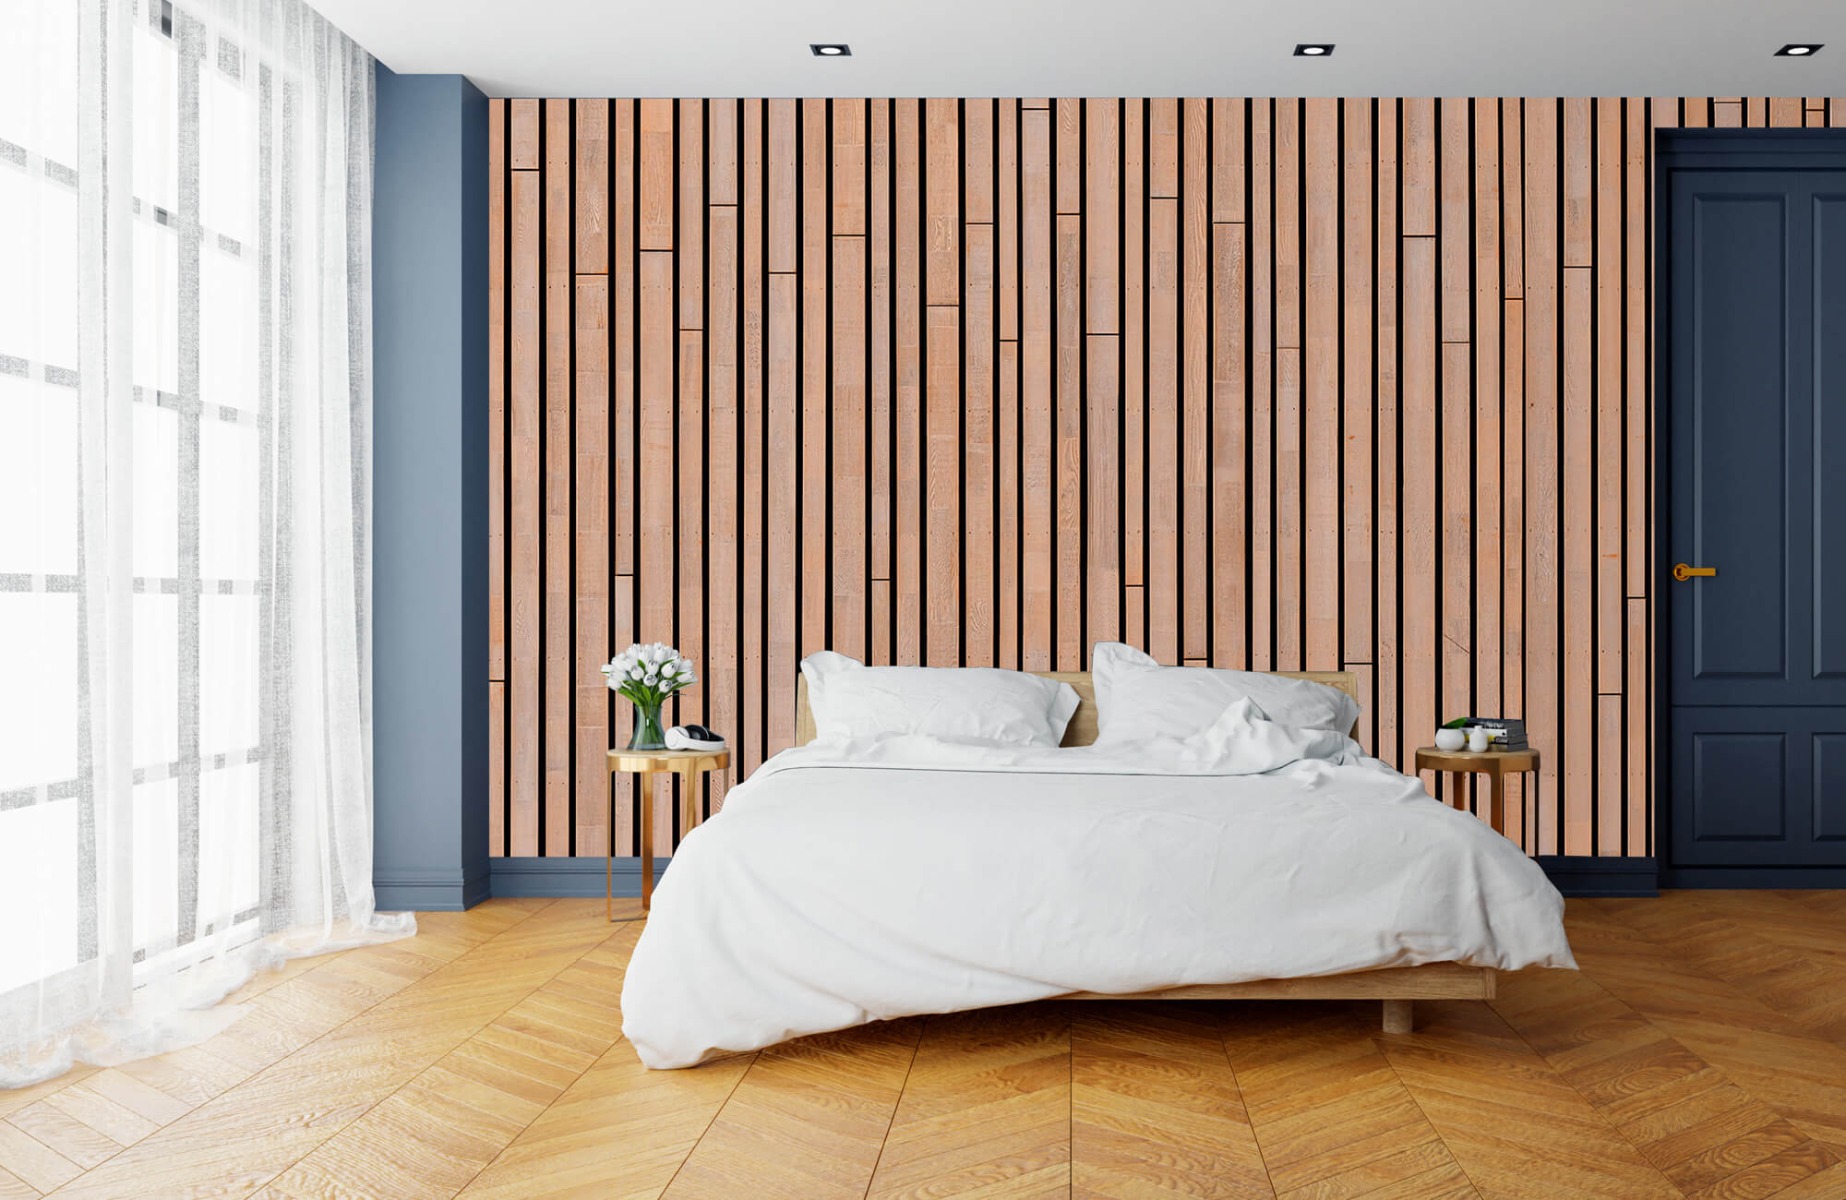 Wooden wallpaper - Wooden planks  - Bedroom 17